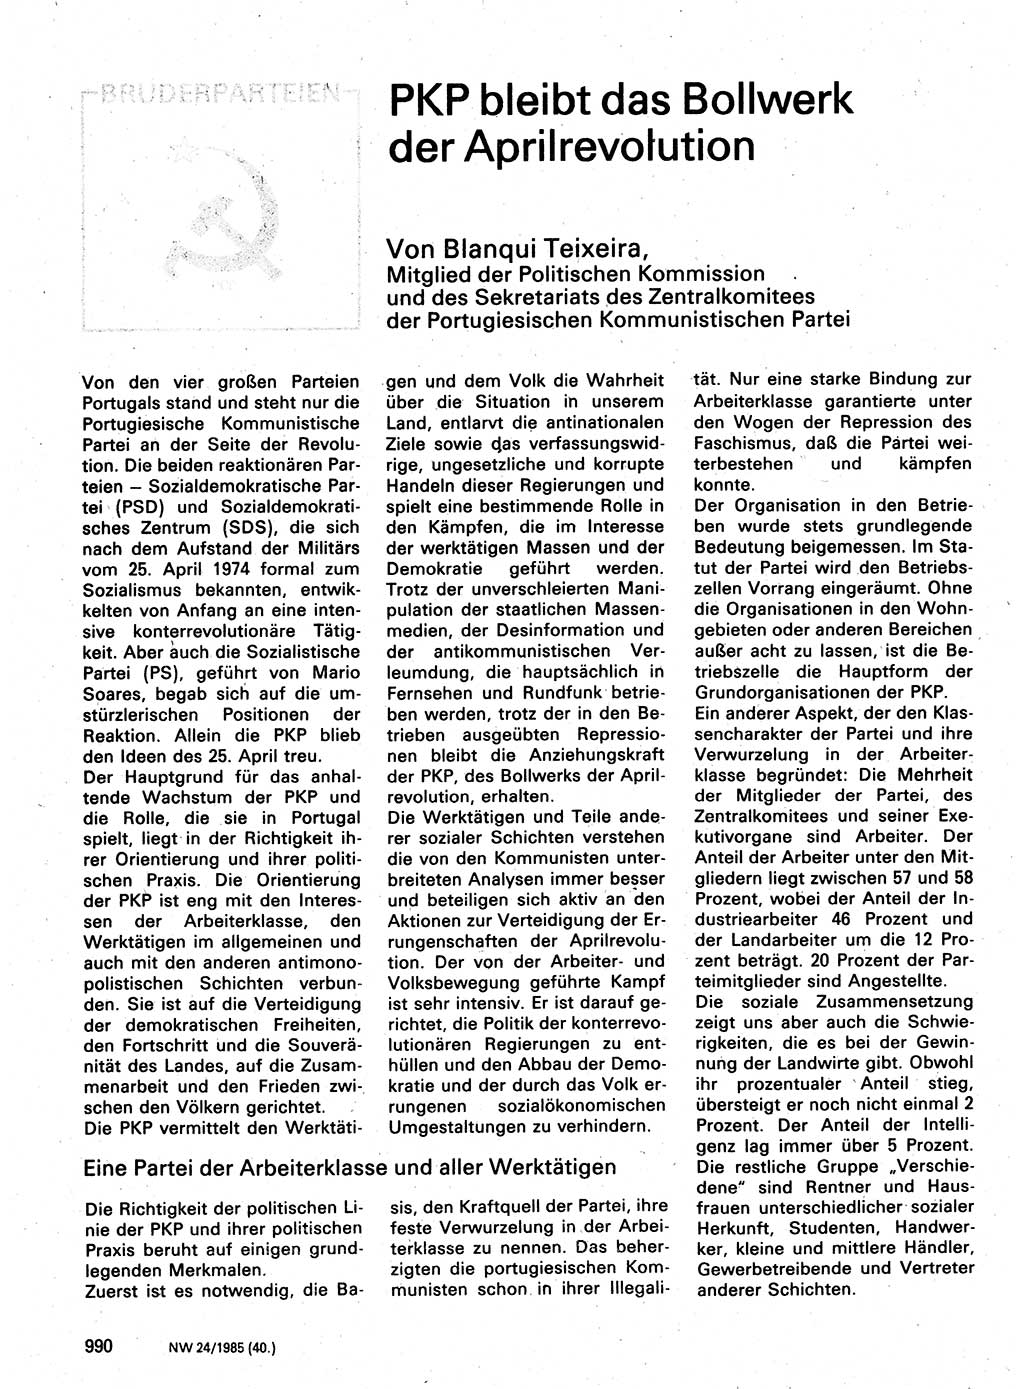 Neuer Weg (NW), Organ des Zentralkomitees (ZK) der SED (Sozialistische Einheitspartei Deutschlands) für Fragen des Parteilebens, 40. Jahrgang [Deutsche Demokratische Republik (DDR)] 1985, Seite 990 (NW ZK SED DDR 1985, S. 990)